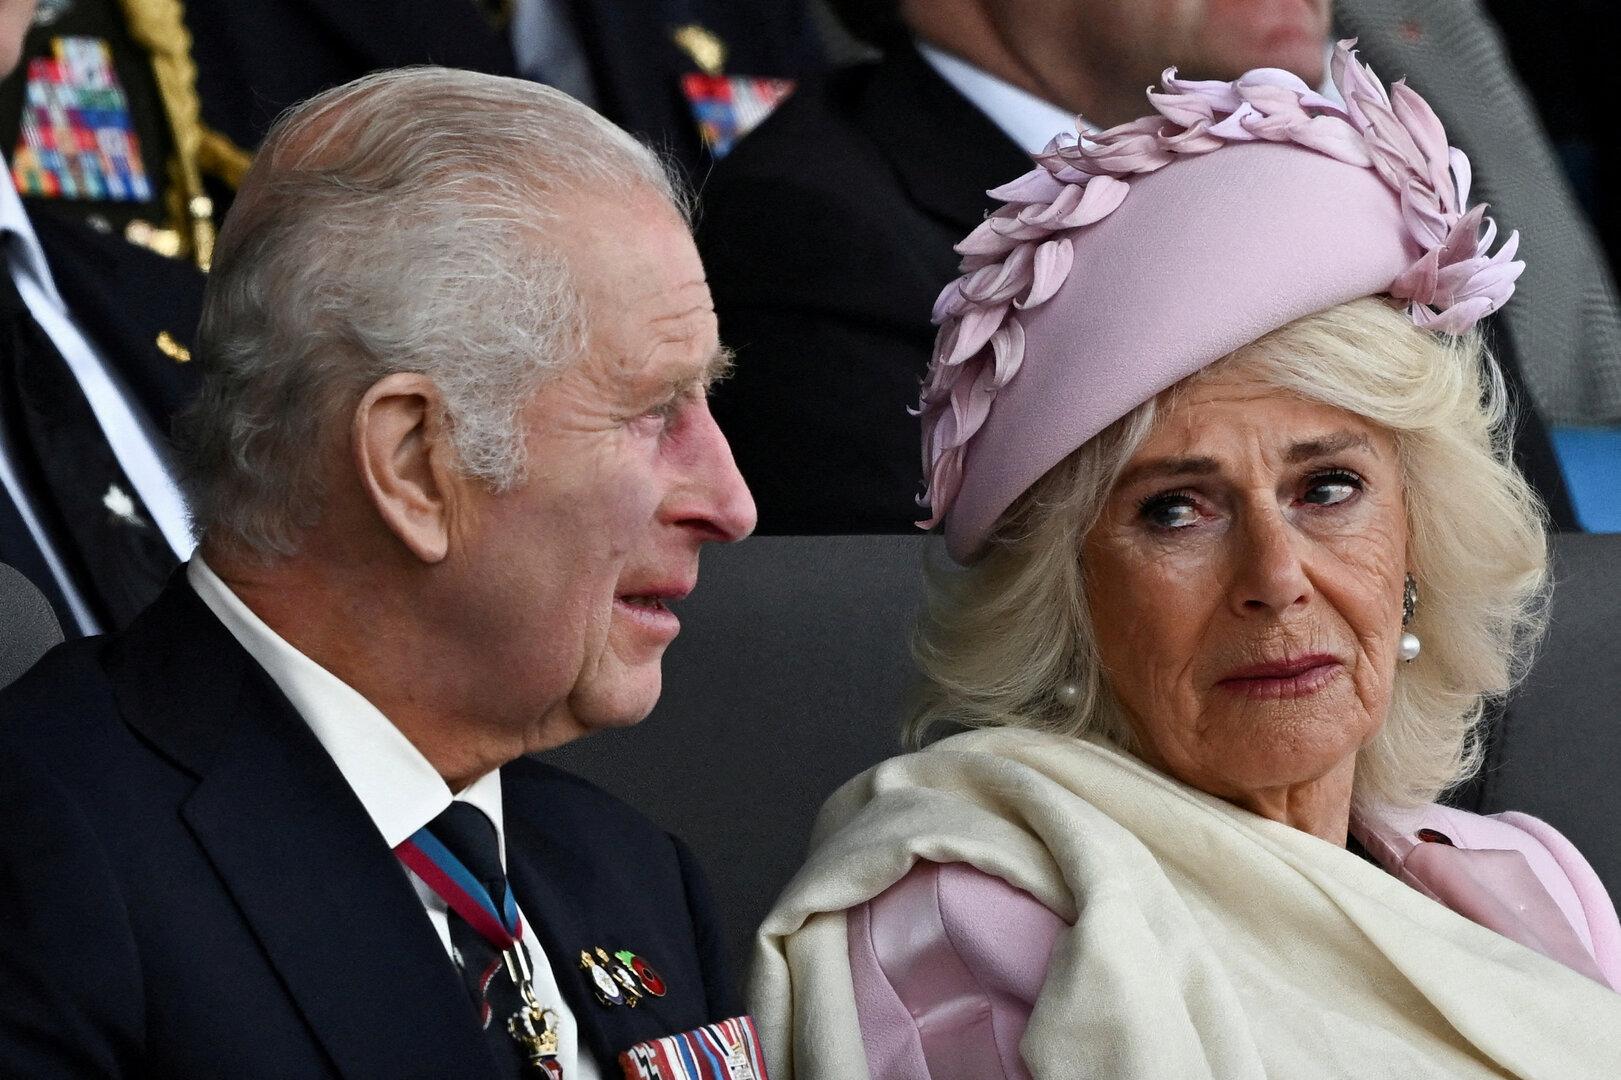 Königspaar von Emotionen überwältigt: Charles und Camilla in Tränen